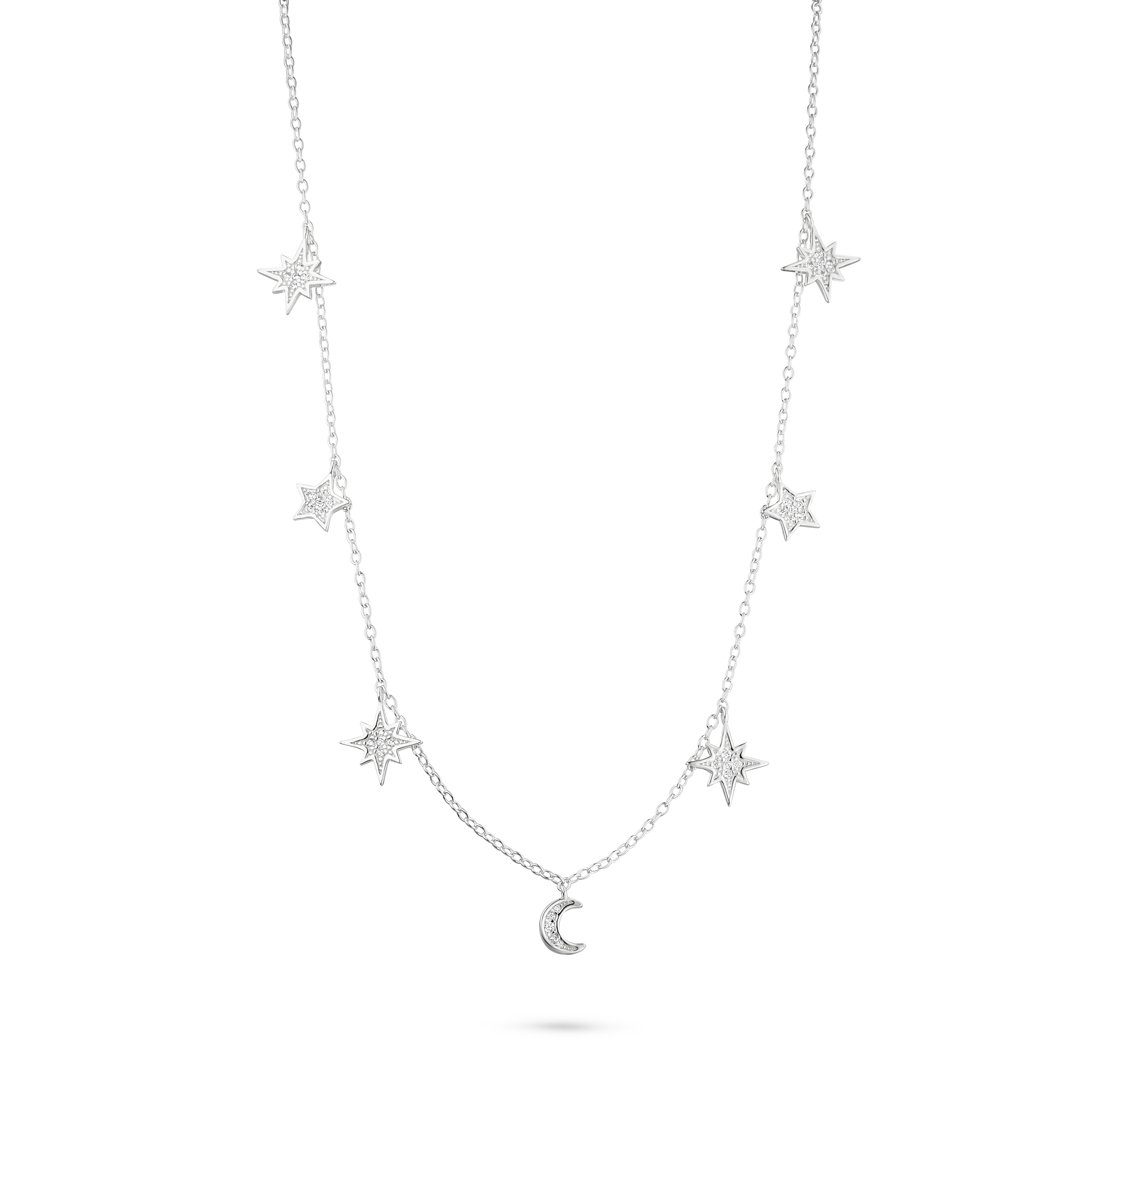 Fiocco Jewelry 925 Universo Silber Collier Kette